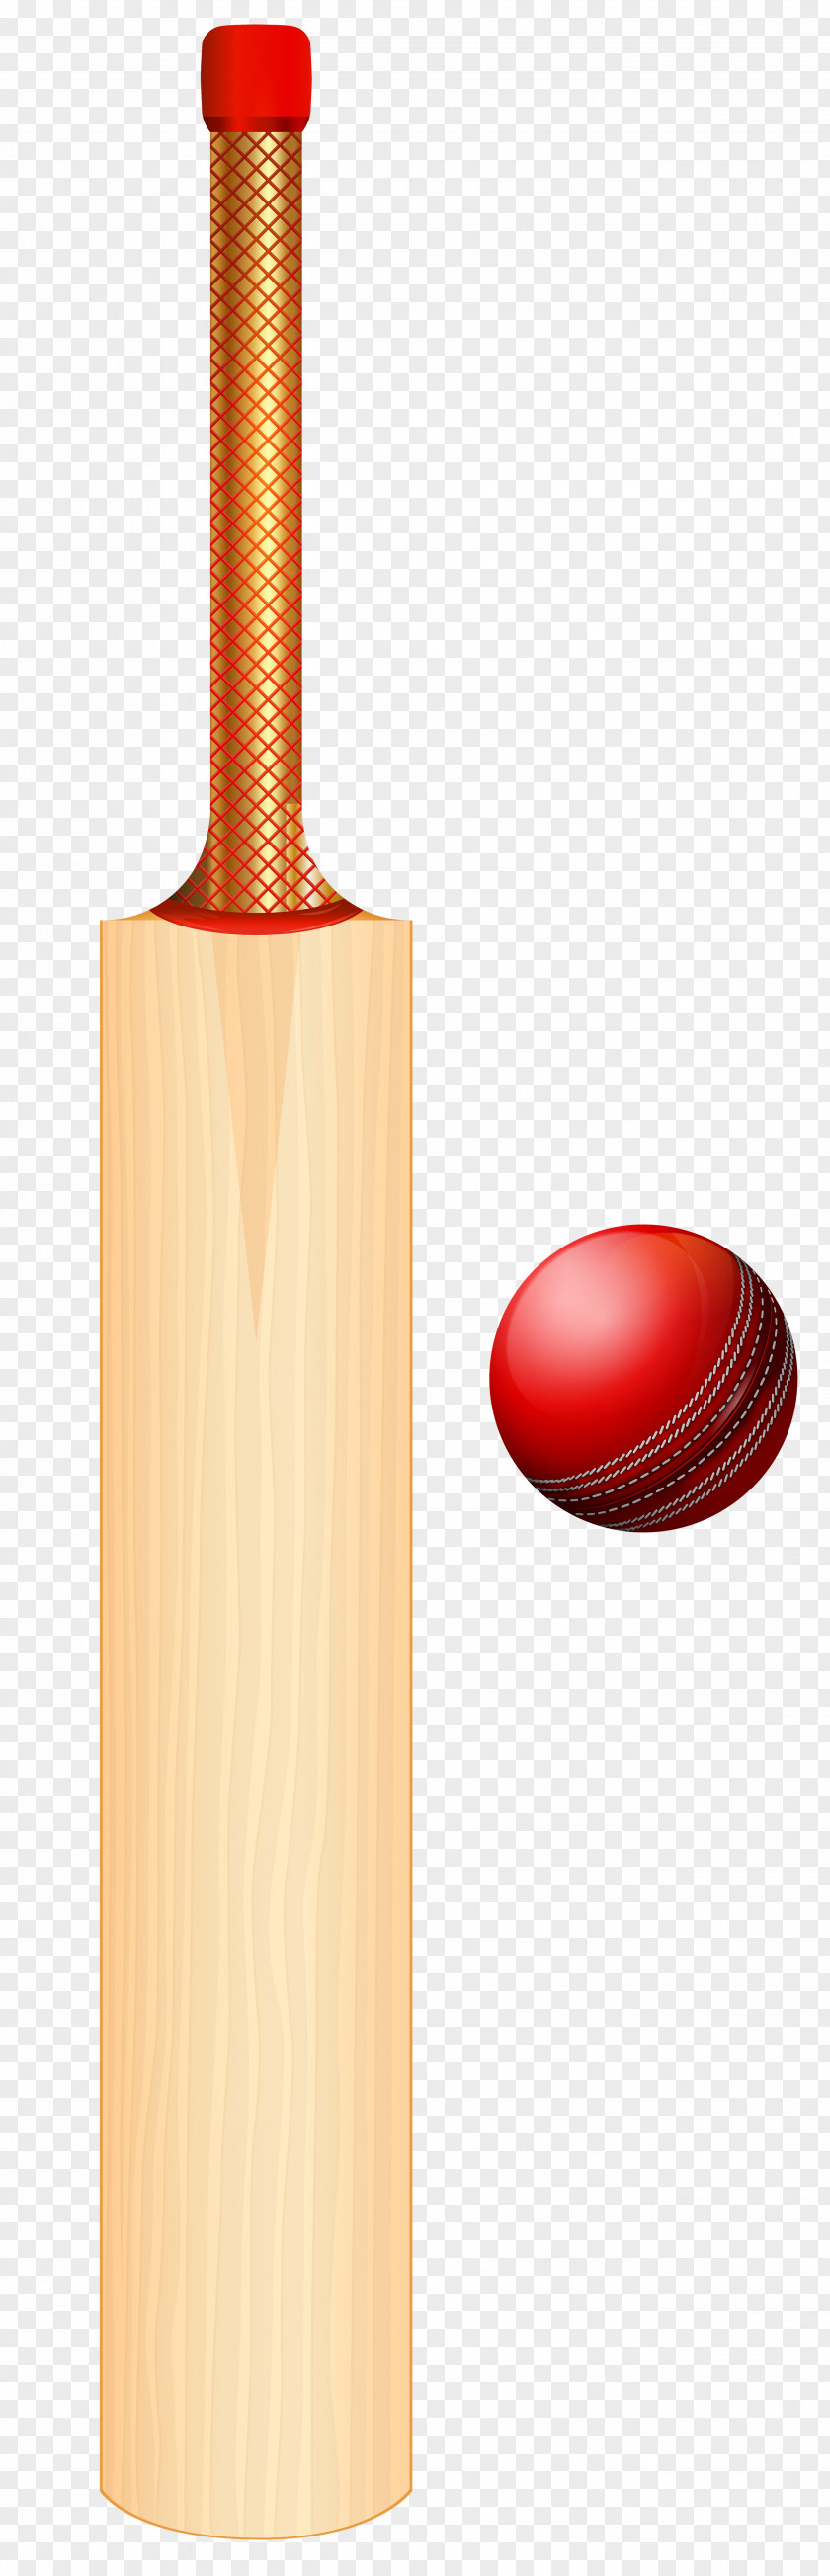 Cricket Set Transparent Clip Art Image Bat Batting PNG